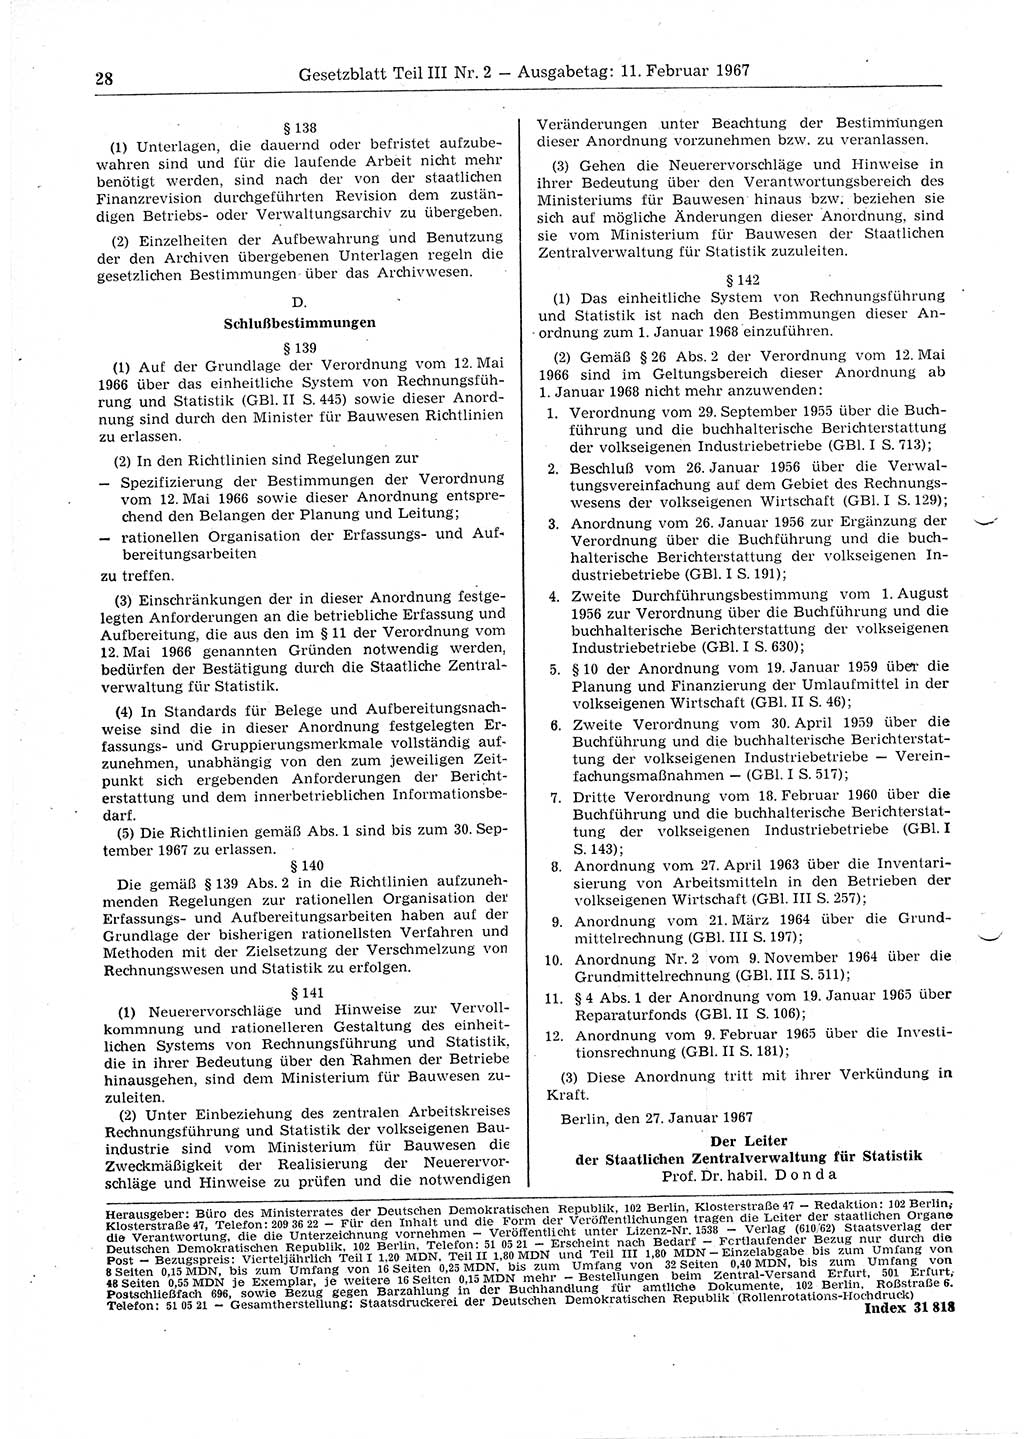 Gesetzblatt (GBl.) der Deutschen Demokratischen Republik (DDR) Teil ⅠⅠⅠ 1967, Seite 28 (GBl. DDR ⅠⅠⅠ 1967, S. 28)